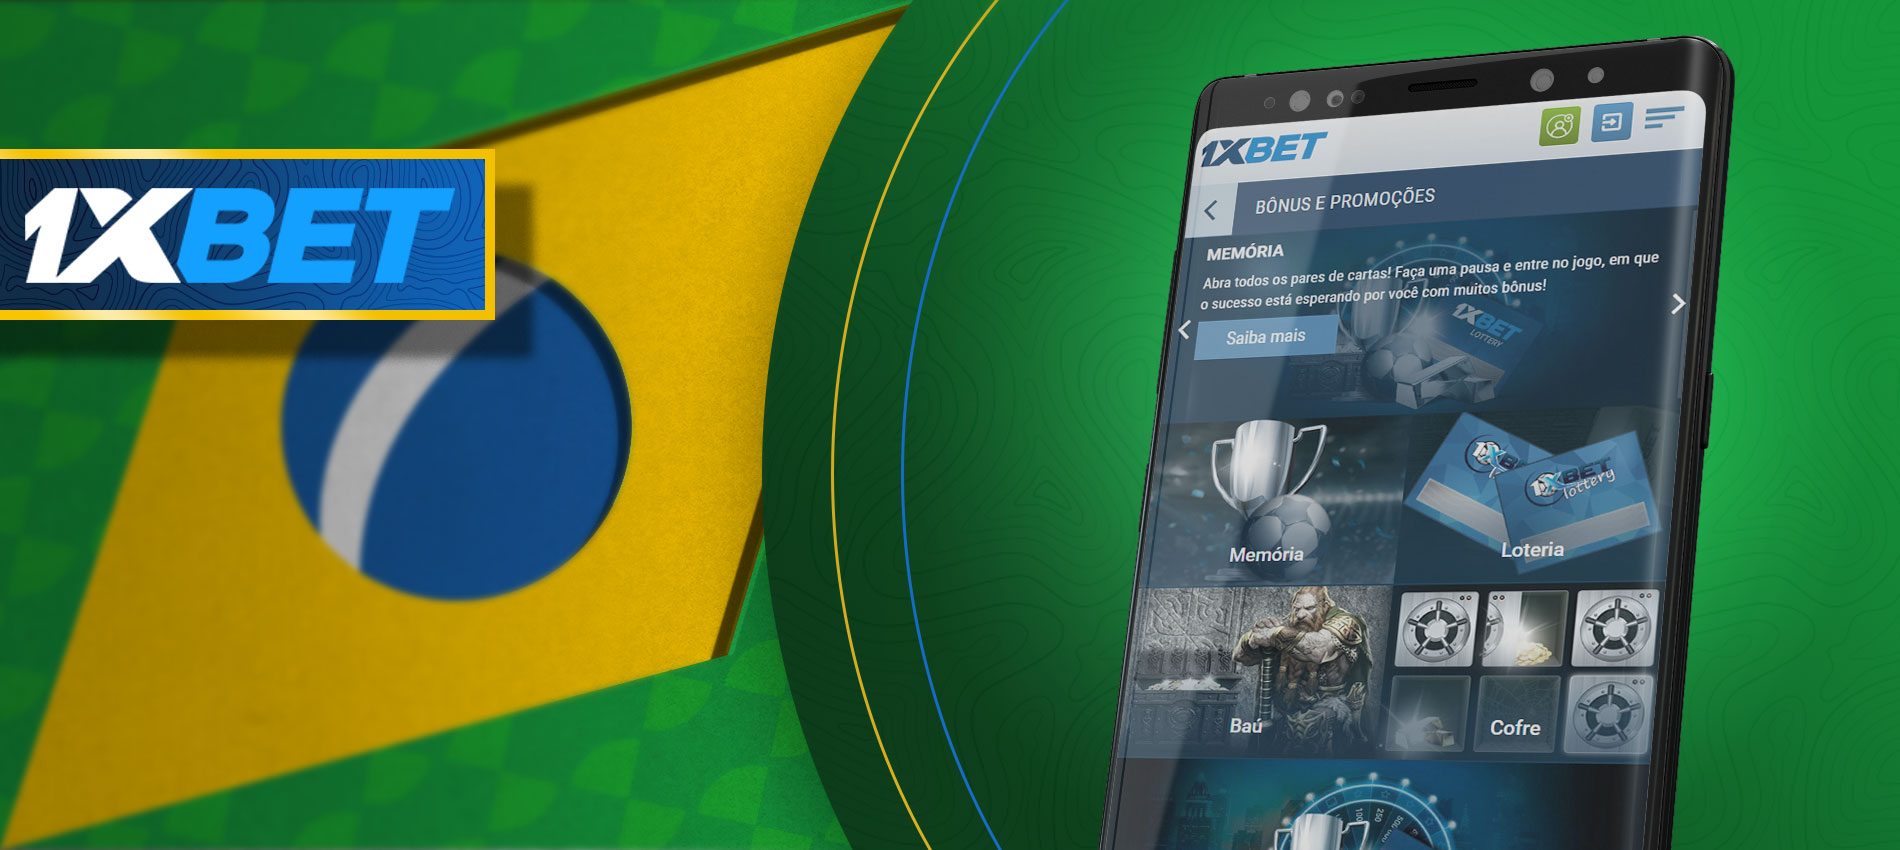 Uma das melhores casas de apostas entre outras aplicações brasileiras - 1xbet.